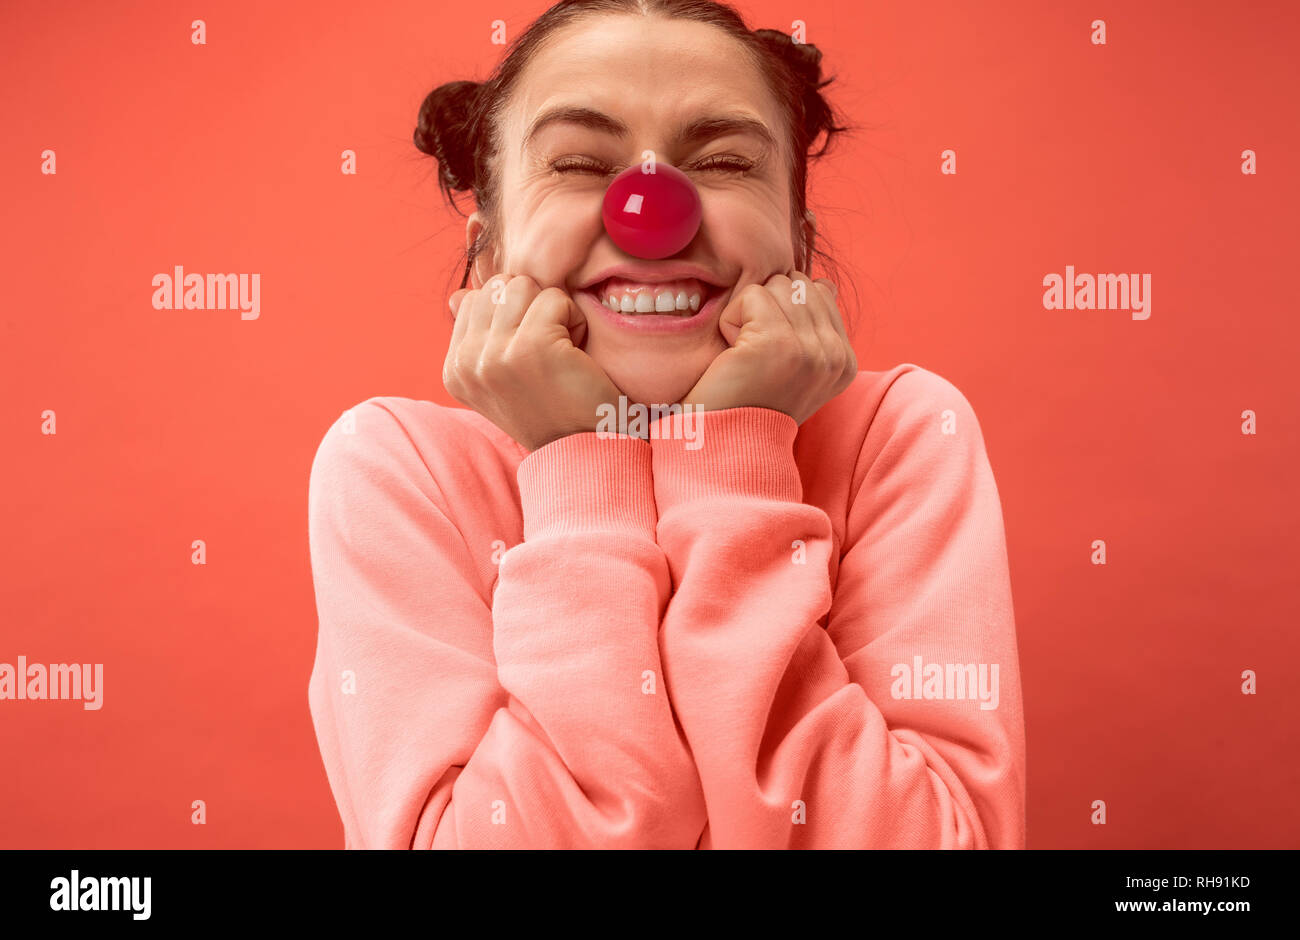 La felice sorpresa e donna sorridente sul naso rosso al giorno. Il clown, divertimento, party, celebrazione, divertente, gioia, vacanze, umorismo concept Foto Stock